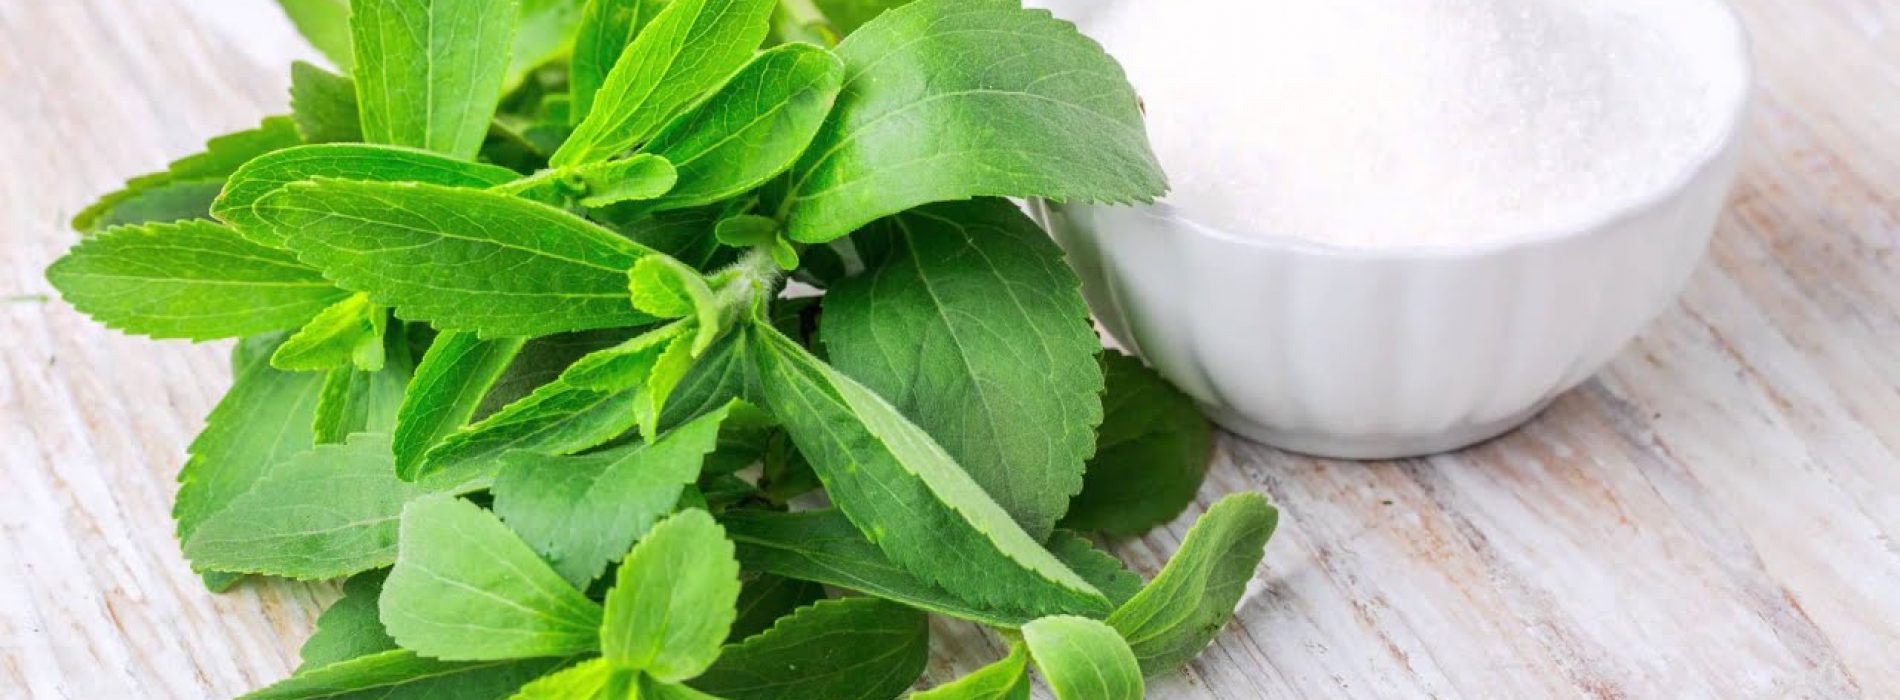 Gezondheidsnieuws over borstkanker: Stevia is de veiligste zoete keuze